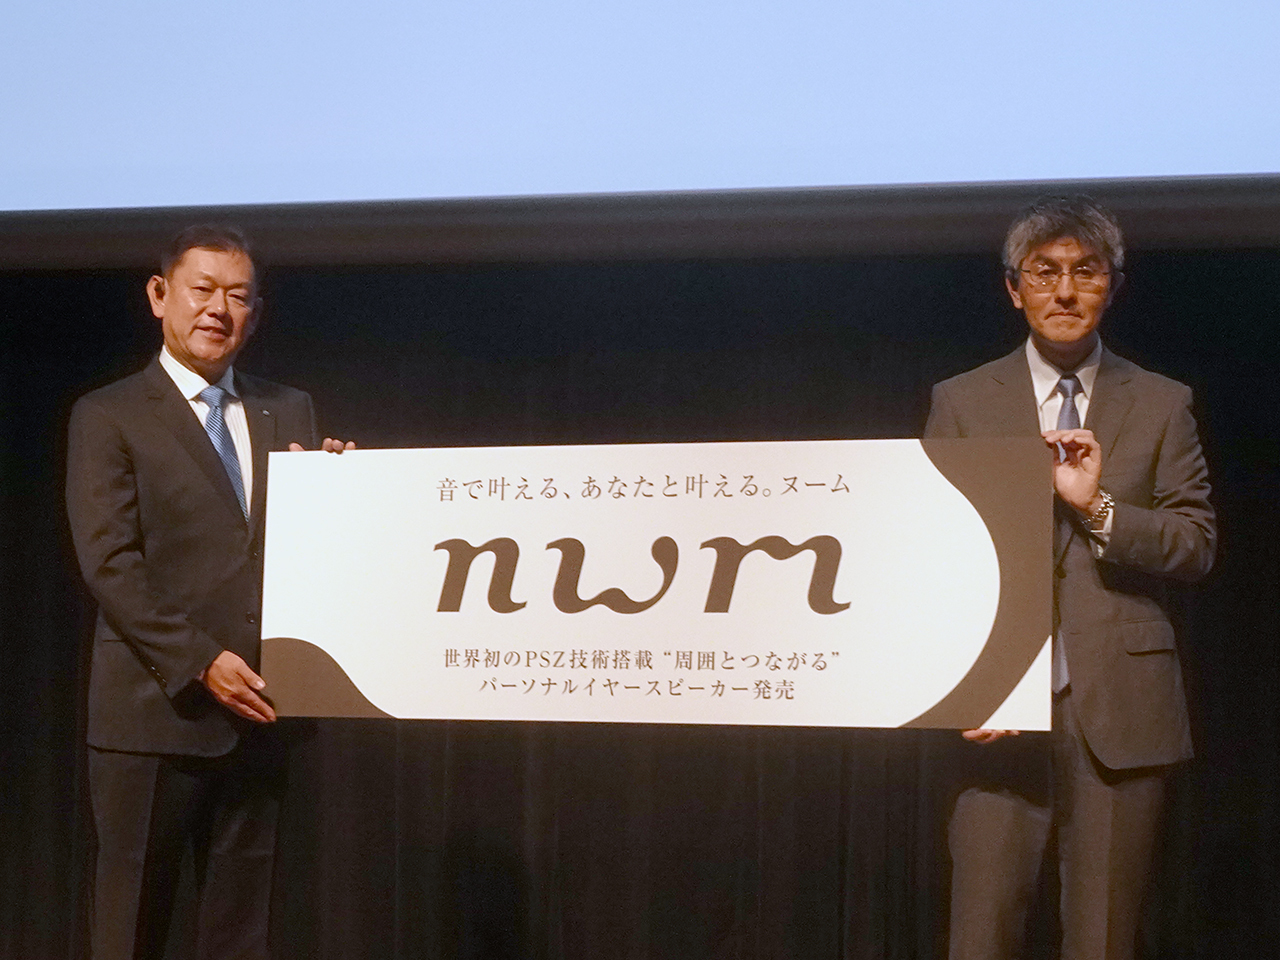 左から、NTT 代表取締役副社長の川添雄彦氏とNTTソノリティ 代表取締役の坂井博氏